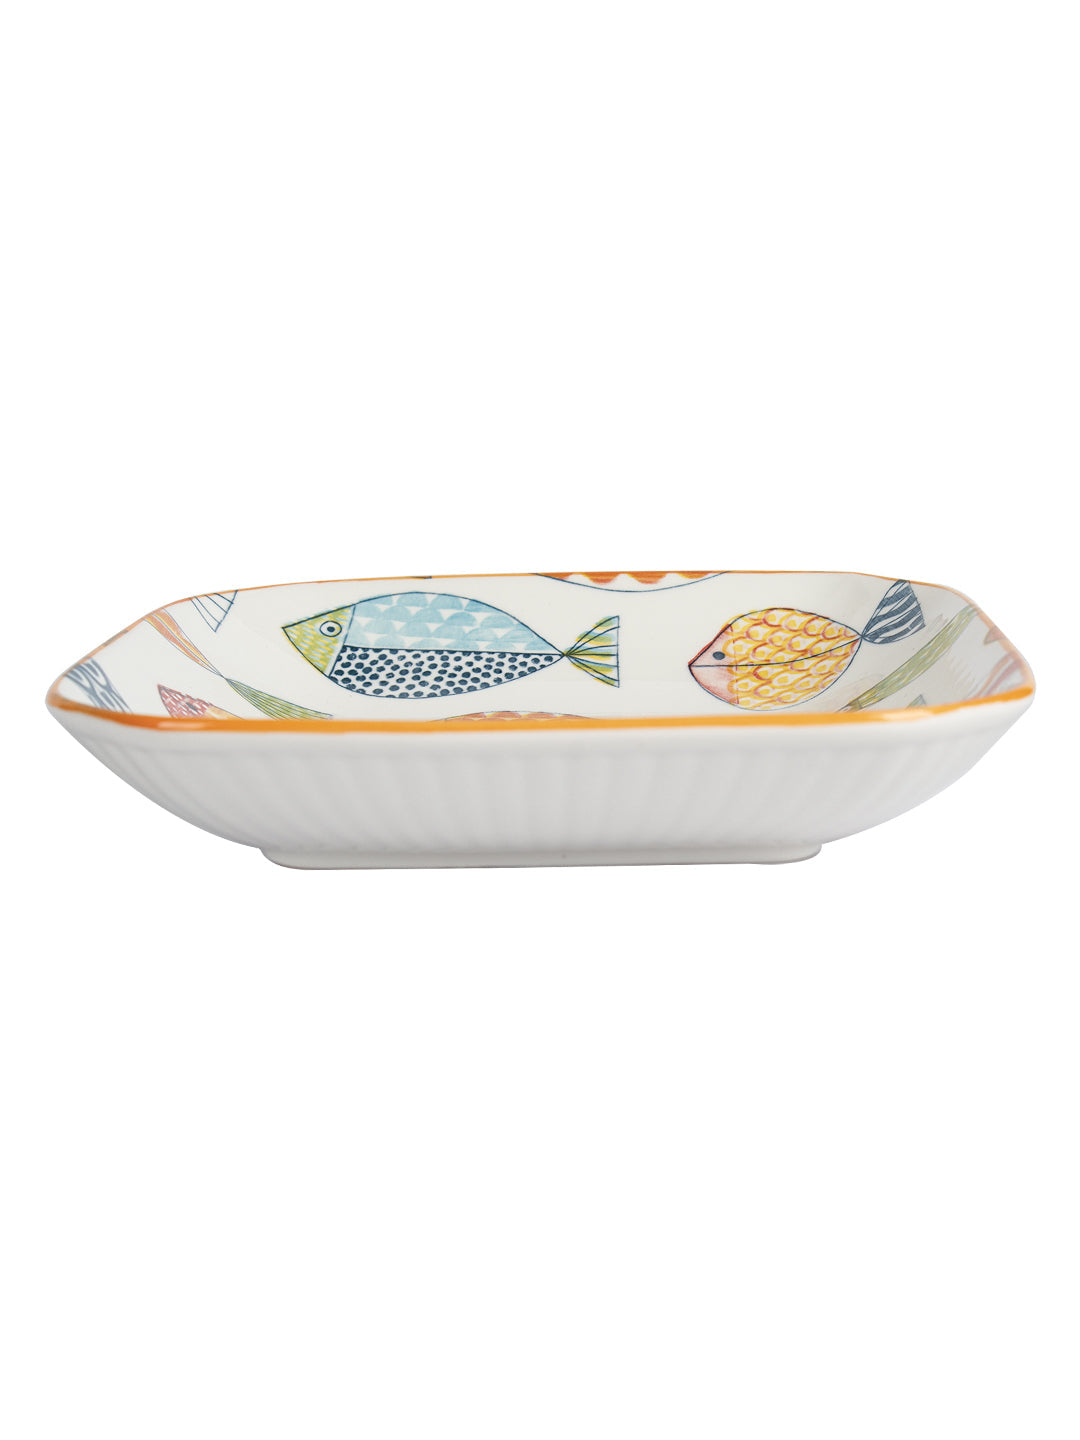 VON CASA Round Ceramic Dinner Plates - Multicolor